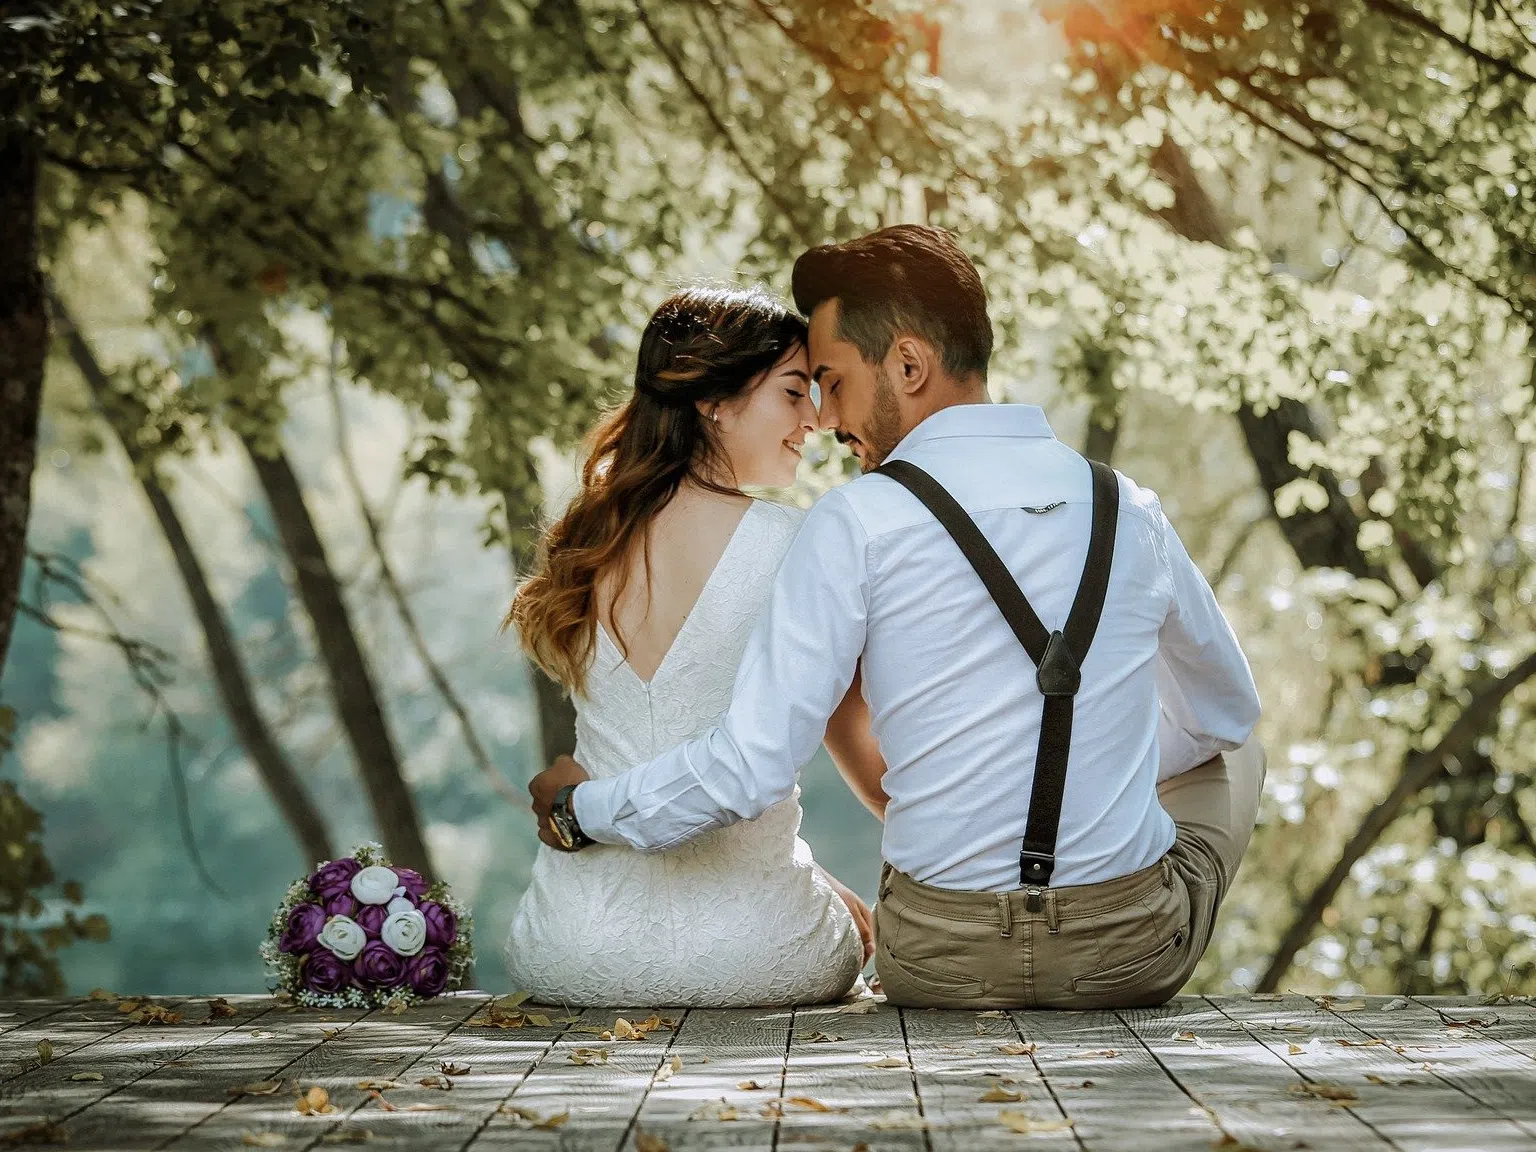 Ожени се, ако можеш - всички дати за сватба в Санторини за 2021 г. вече са заети